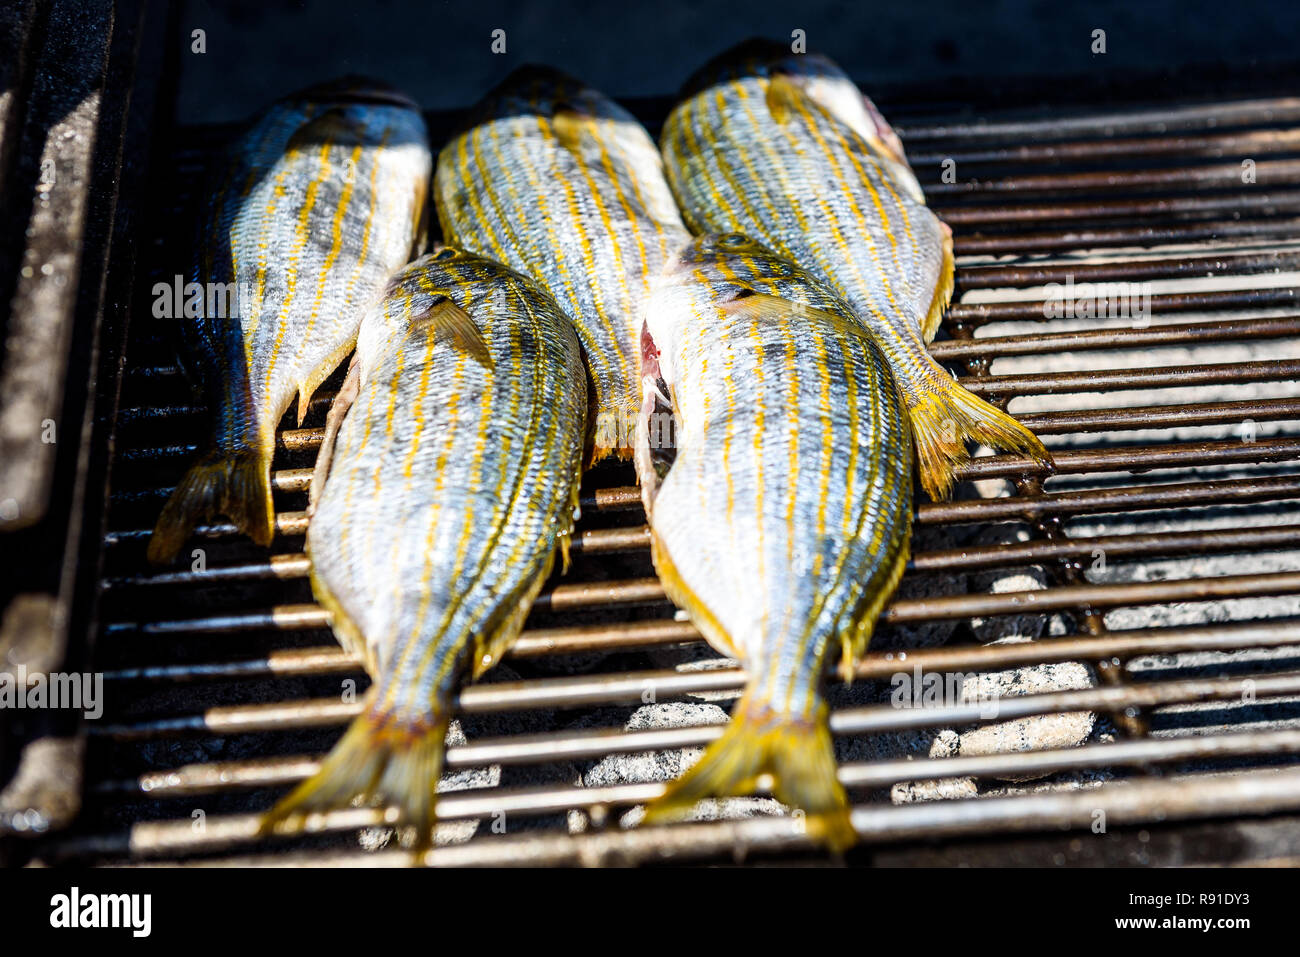 Grillen Fisch auf einem BBQ Grill über glühende Kohle. Vorbereiten und braten Salema porgy, Sarpa salpa oder dorade Fisch auf einem Grill in einem bbq firepla Stockfoto